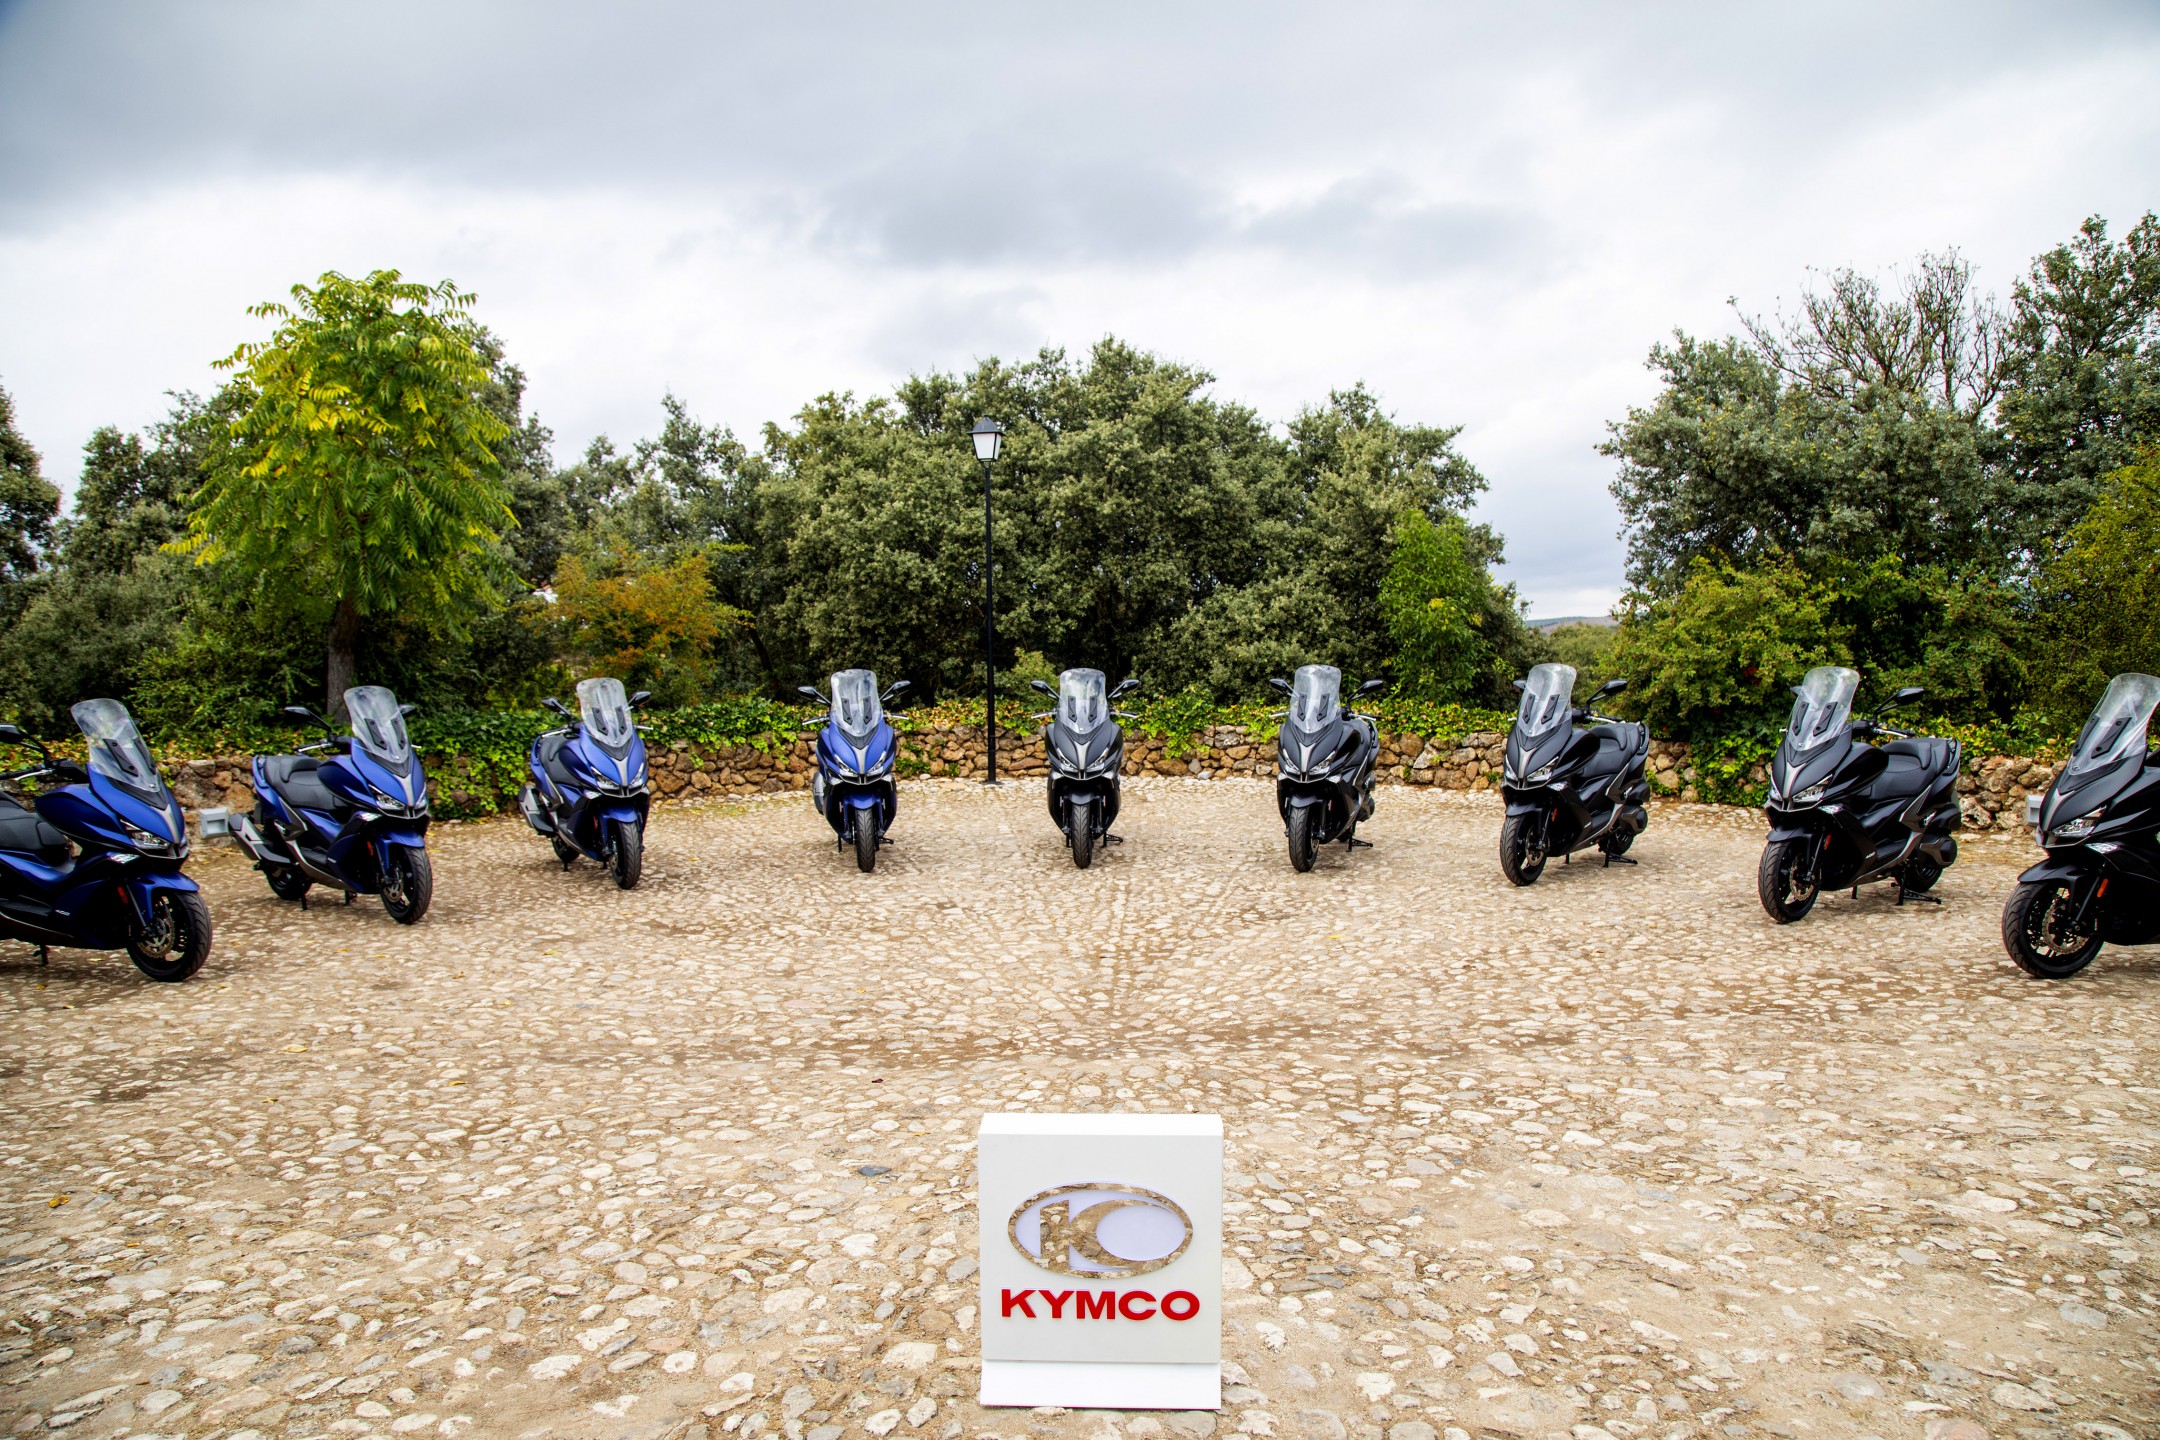 Presentación oficial KYMCO Xciting S 400, Loja (Granada ), septiembre 2019. KYMCO España